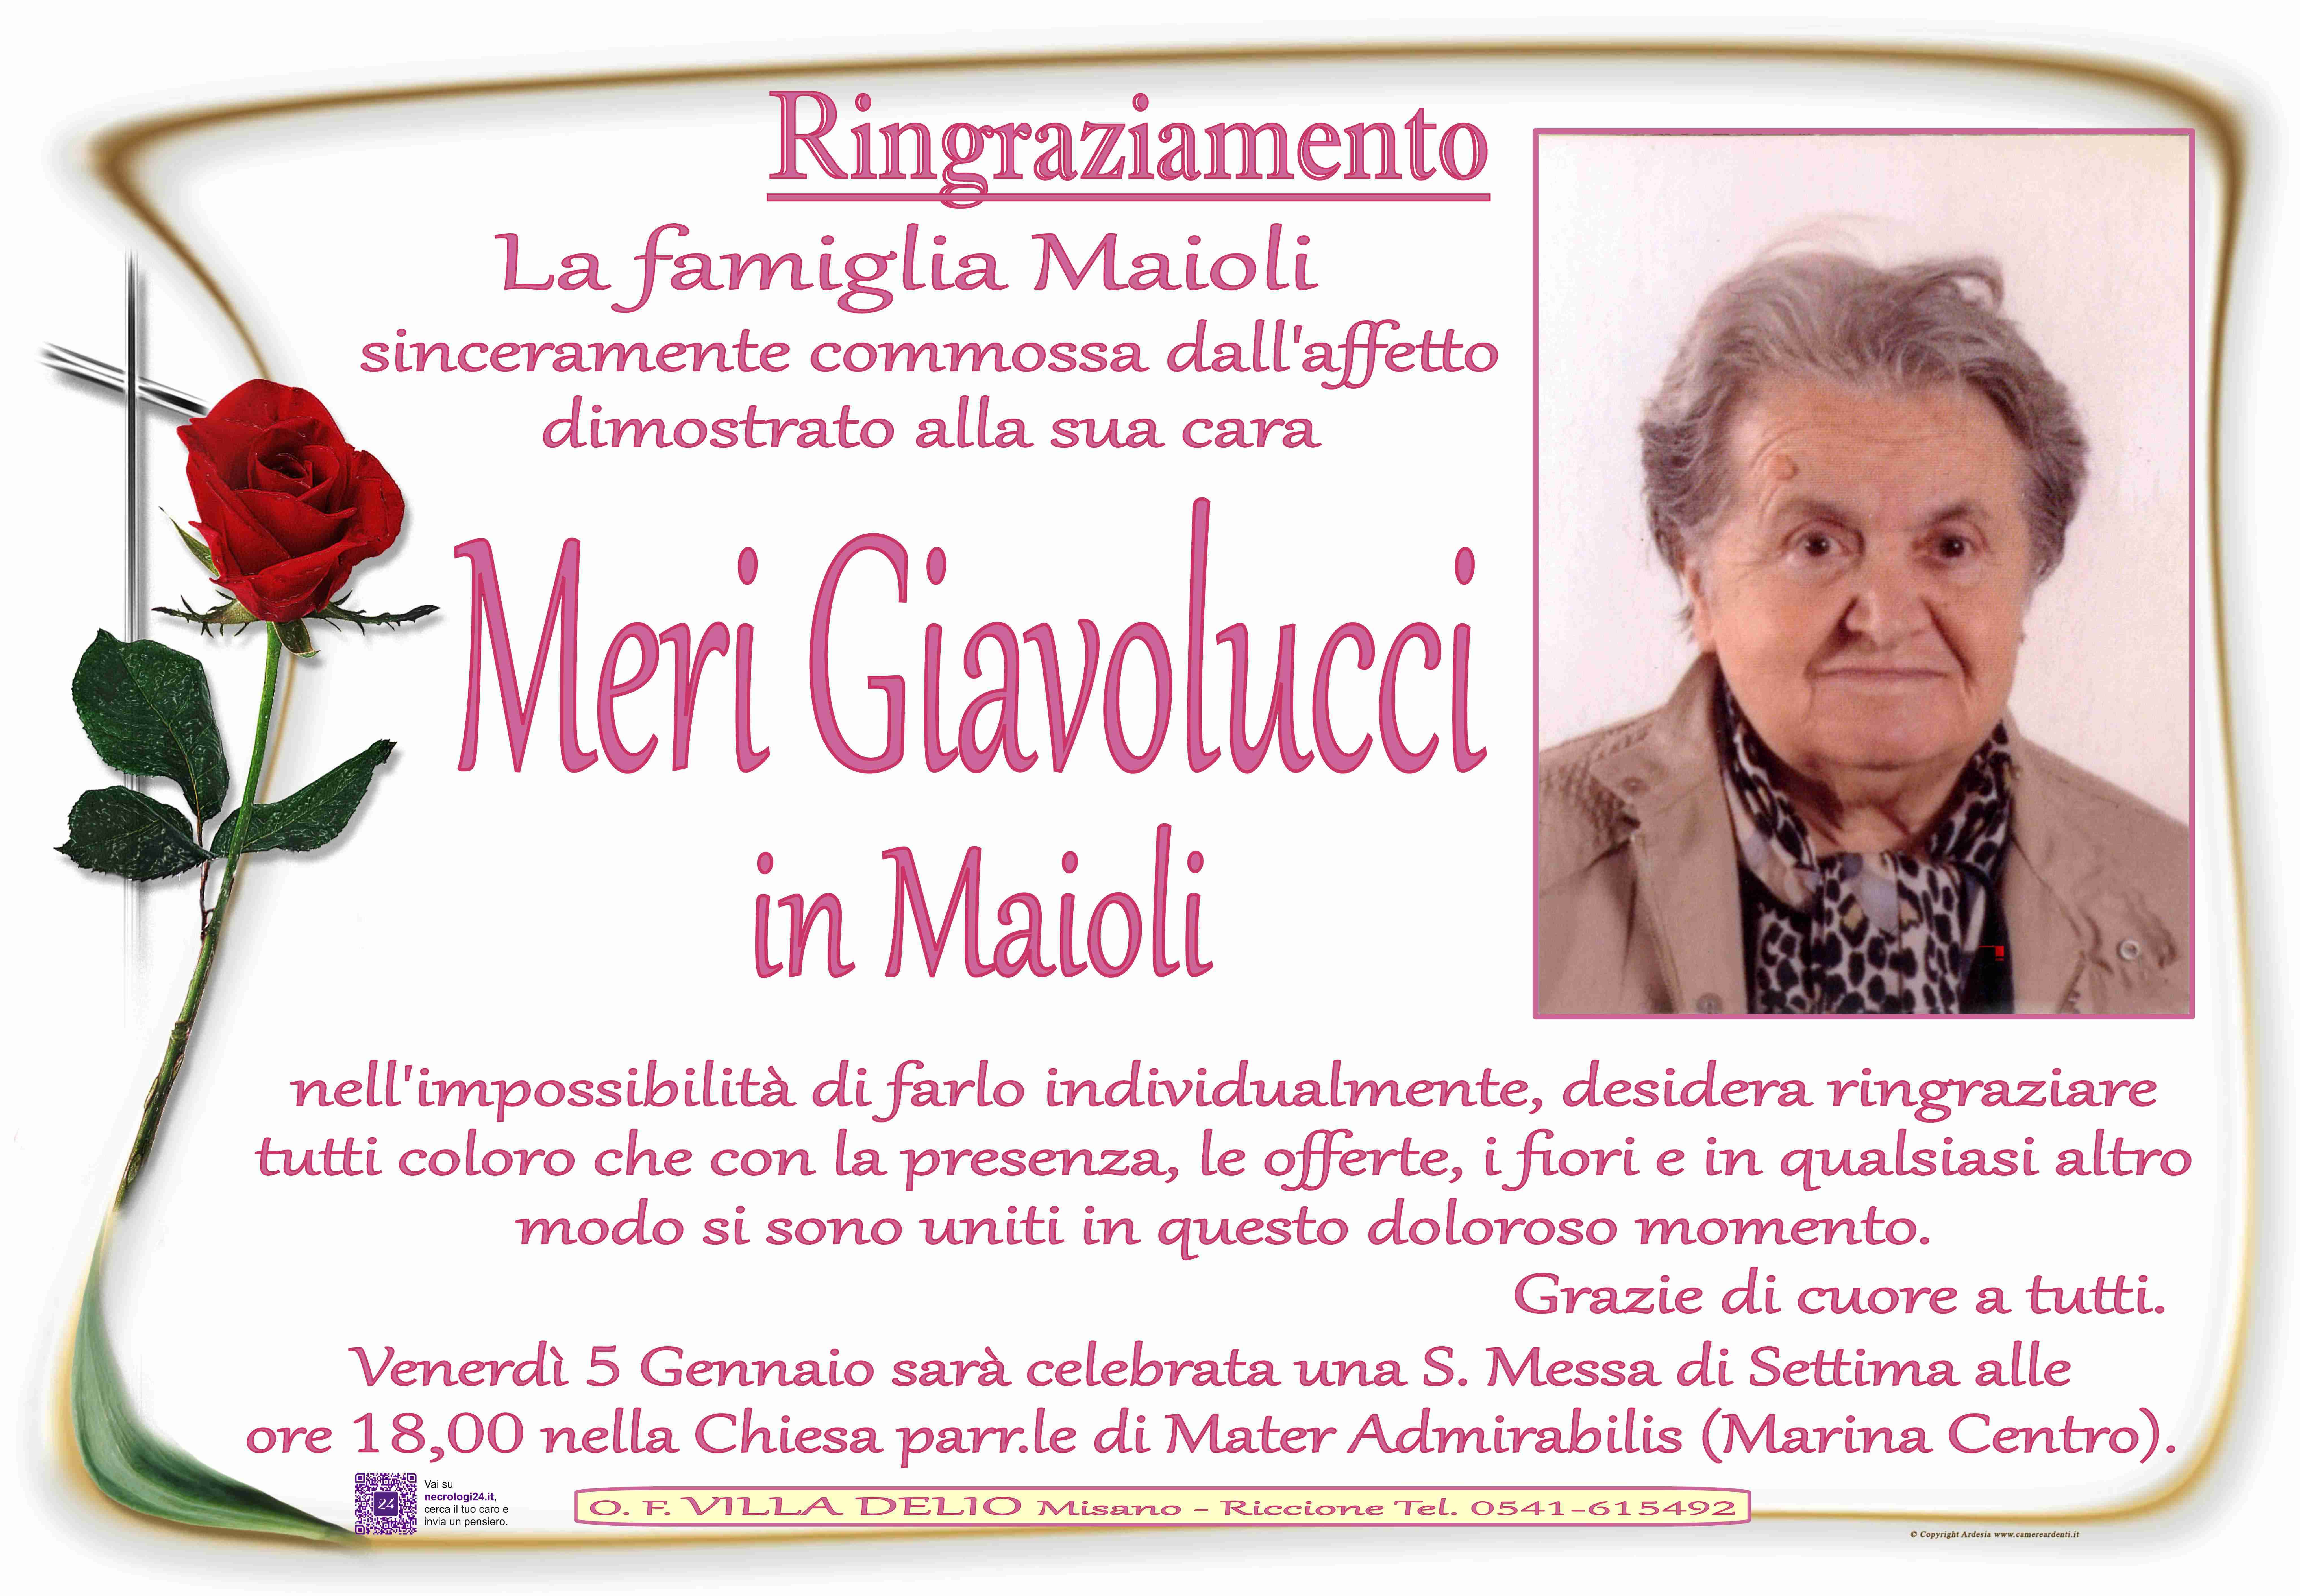 Meri Giavolucci